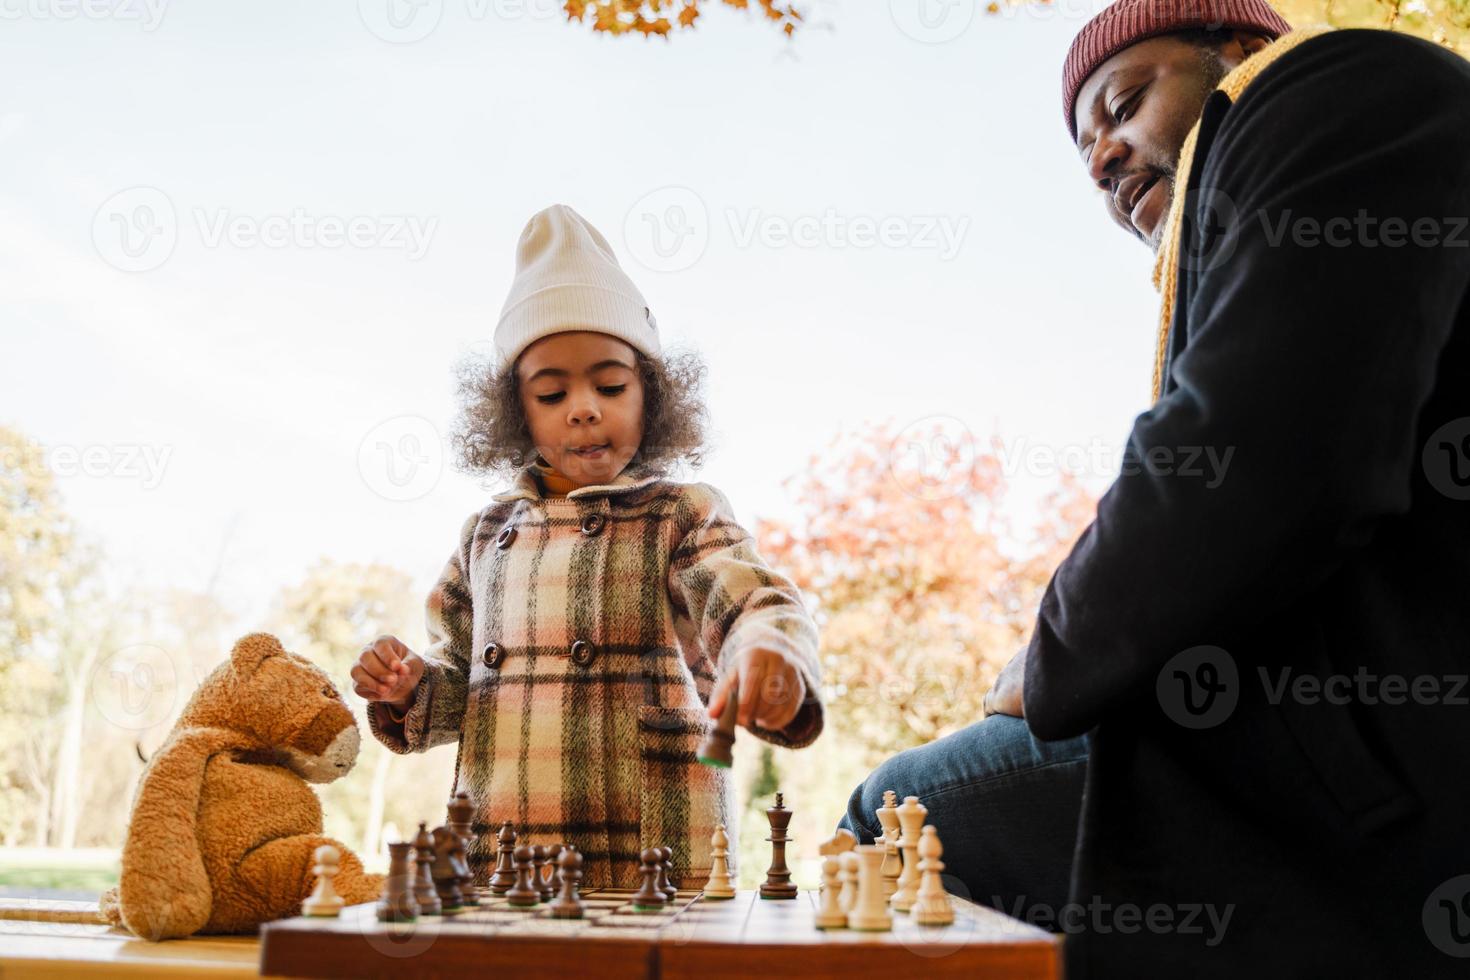 zwarte grootvader en kleindochter schaken in herfstpark foto